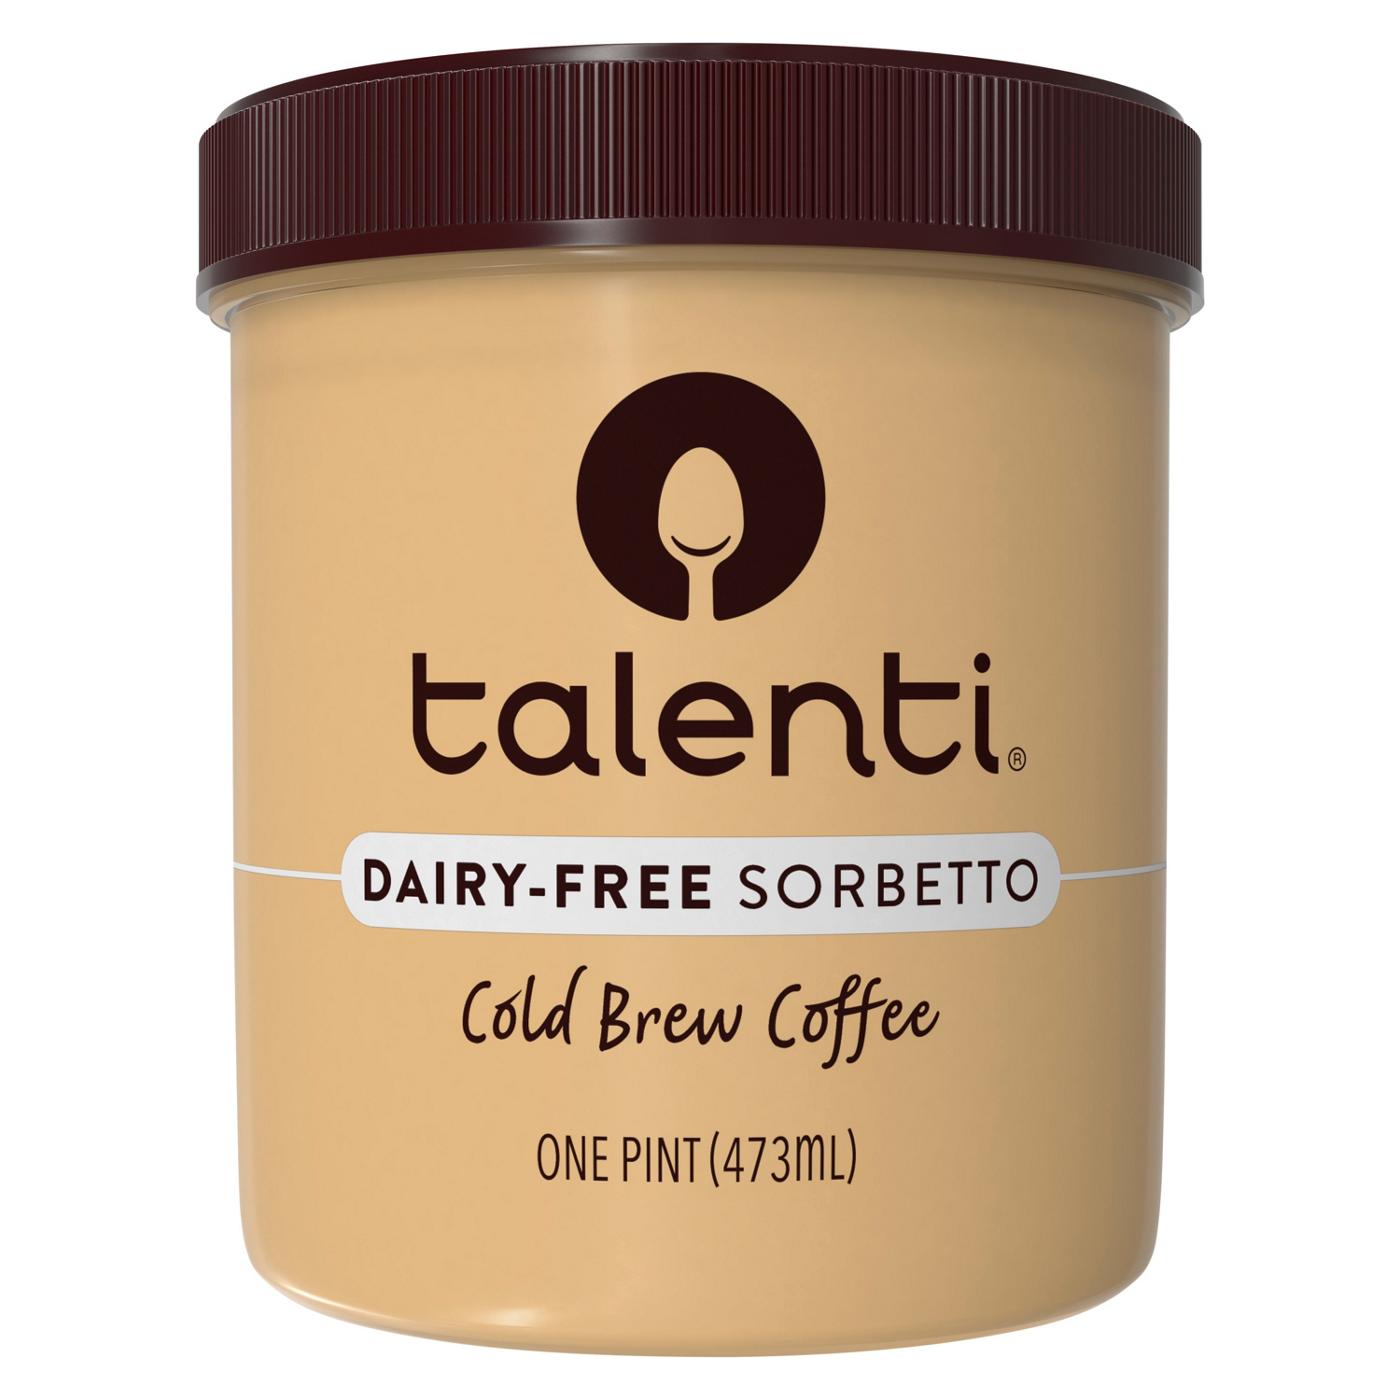 Talenti Dairy-Free Sorbetto Cold Brew Coffee; image 1 of 2